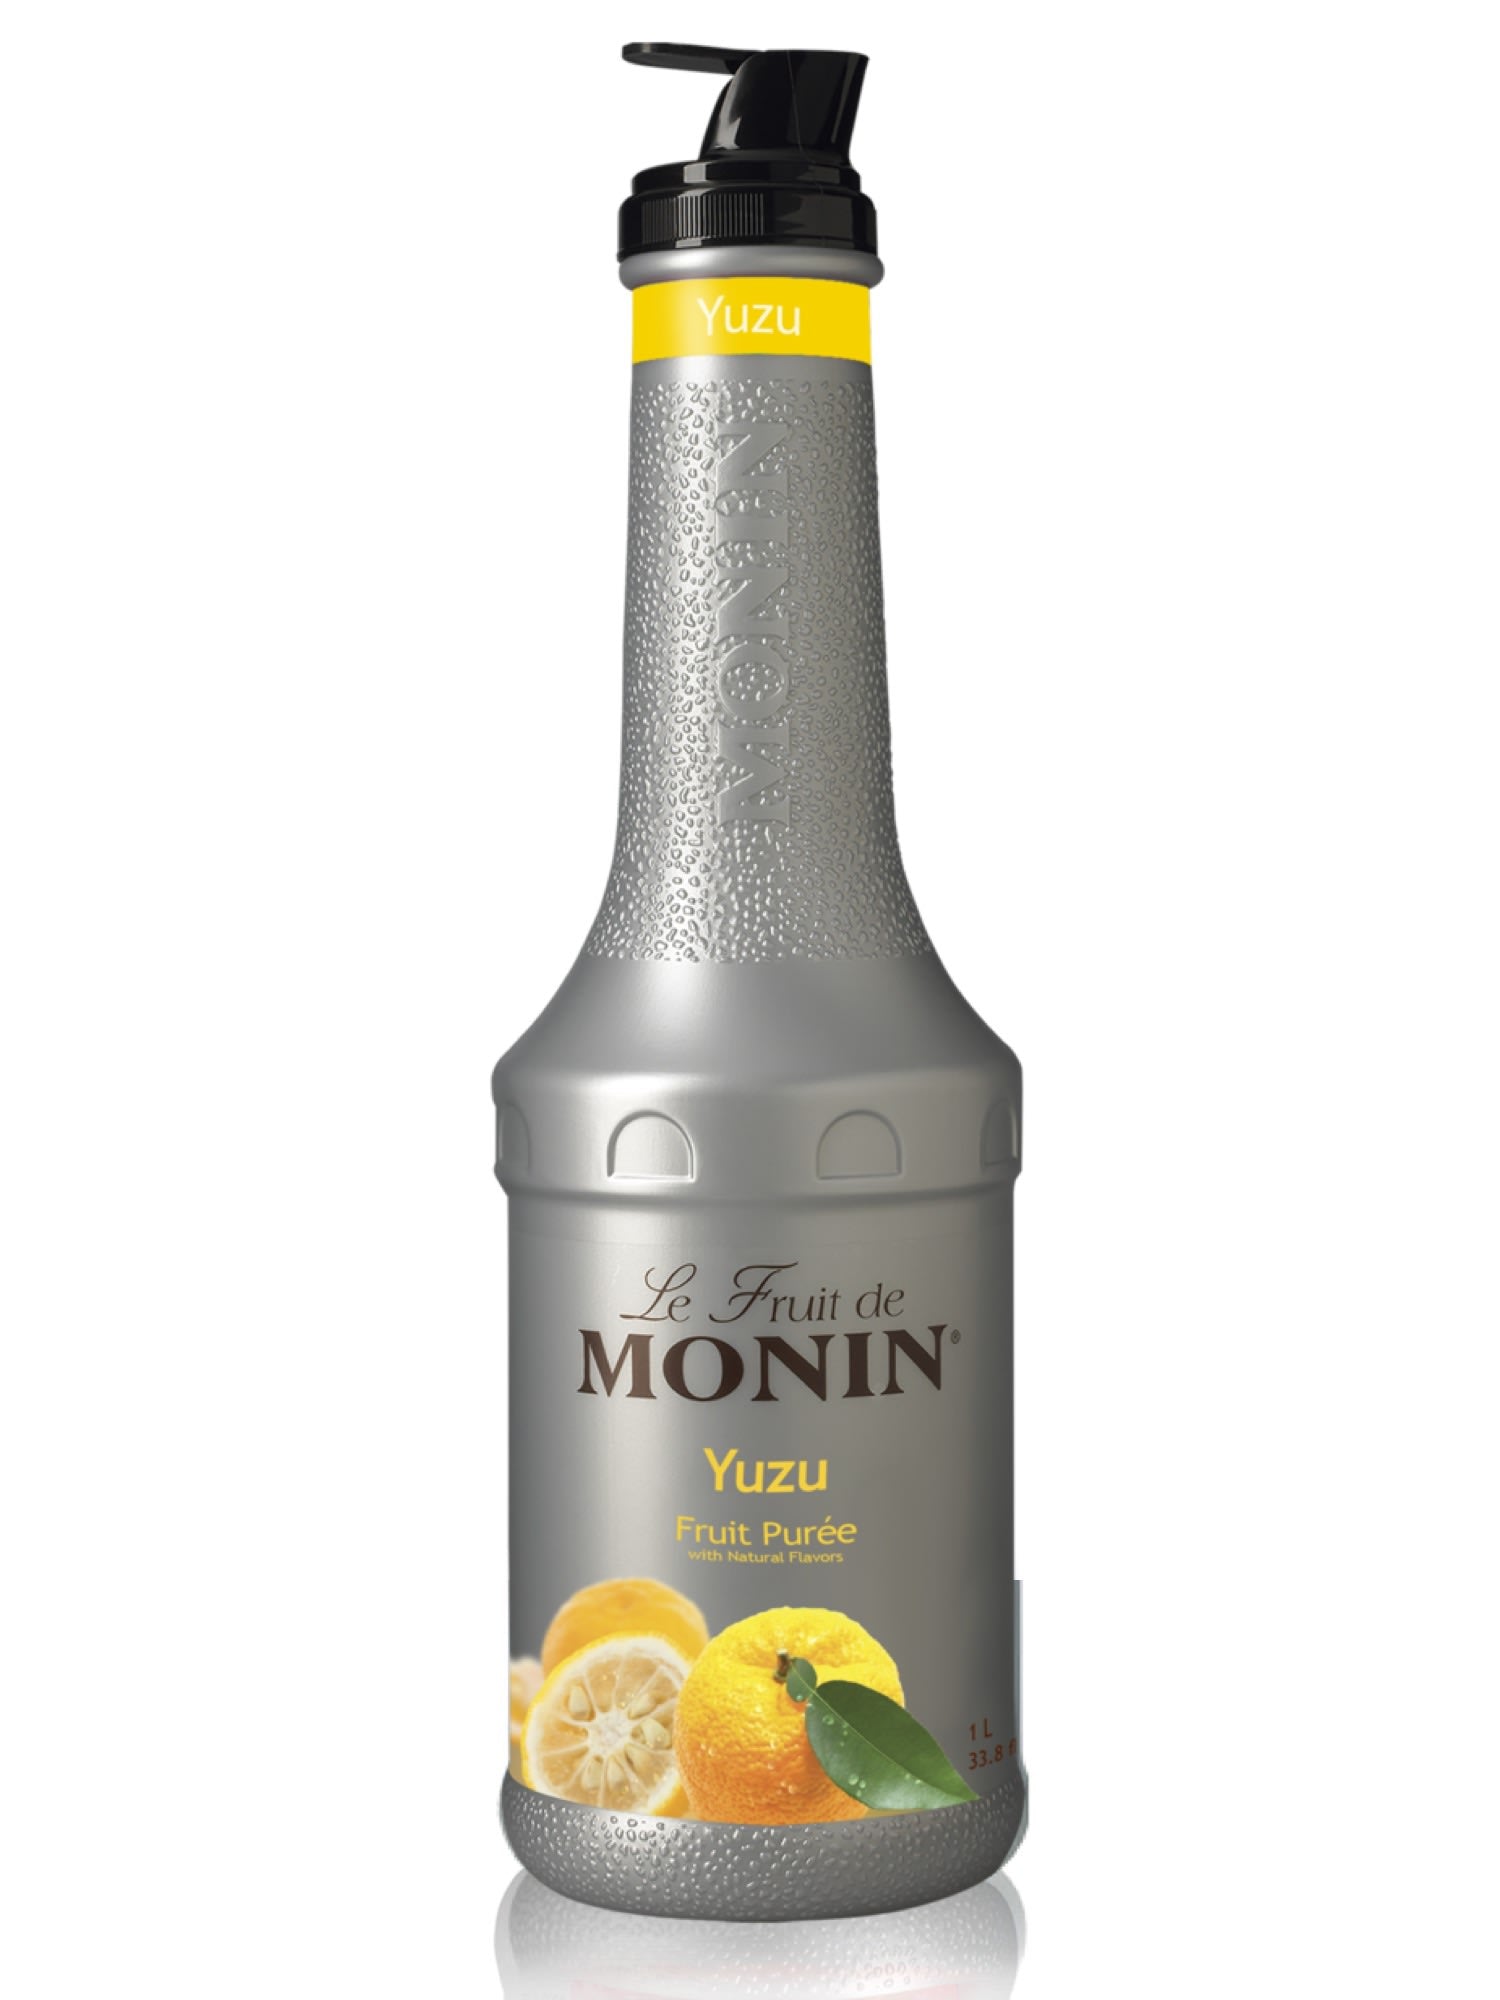 Tilføj en forfriskende citrusnote til dine drinks med Monin Yuzu Frugtpuré